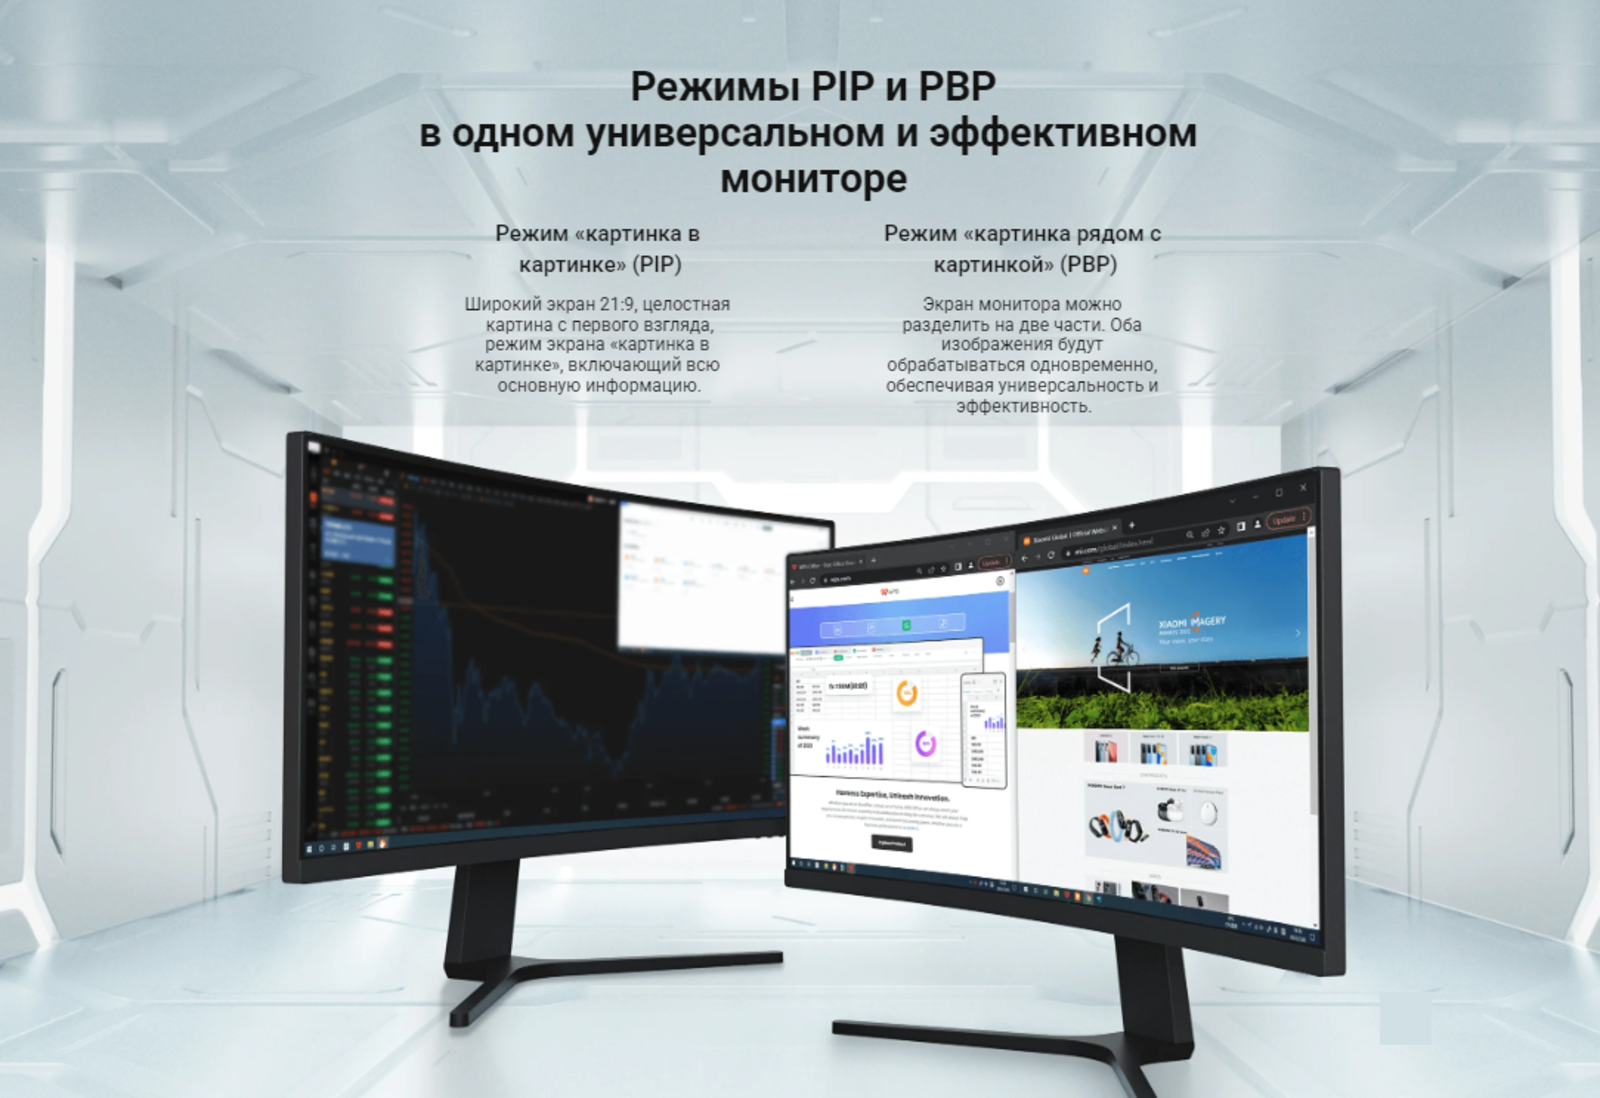 Режимы PIP и PBP в одном универсальном и эффективном мониторе.